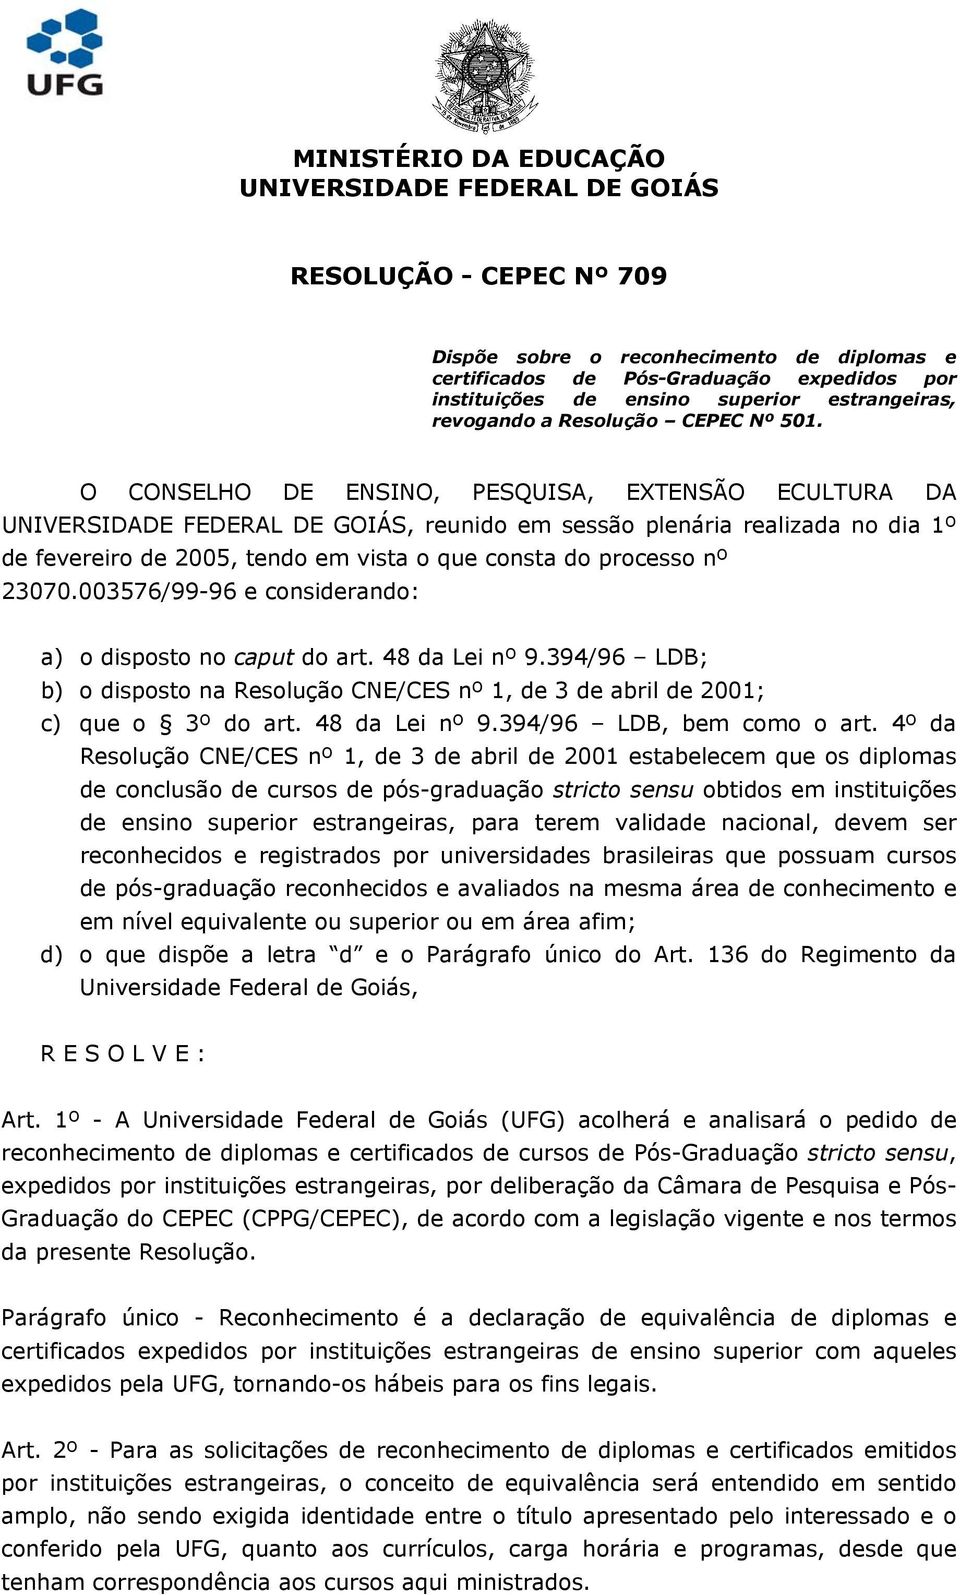 O CONSELHO DE ENSINO, PESQUISA, EXTENSÃO ECULTURA DA UNIVERSIDADE FEDERAL DE GOIÁS, reunido em sessão plenária realizada no dia 1º de fevereiro de 2005, tendo em vista o que consta do processo nº